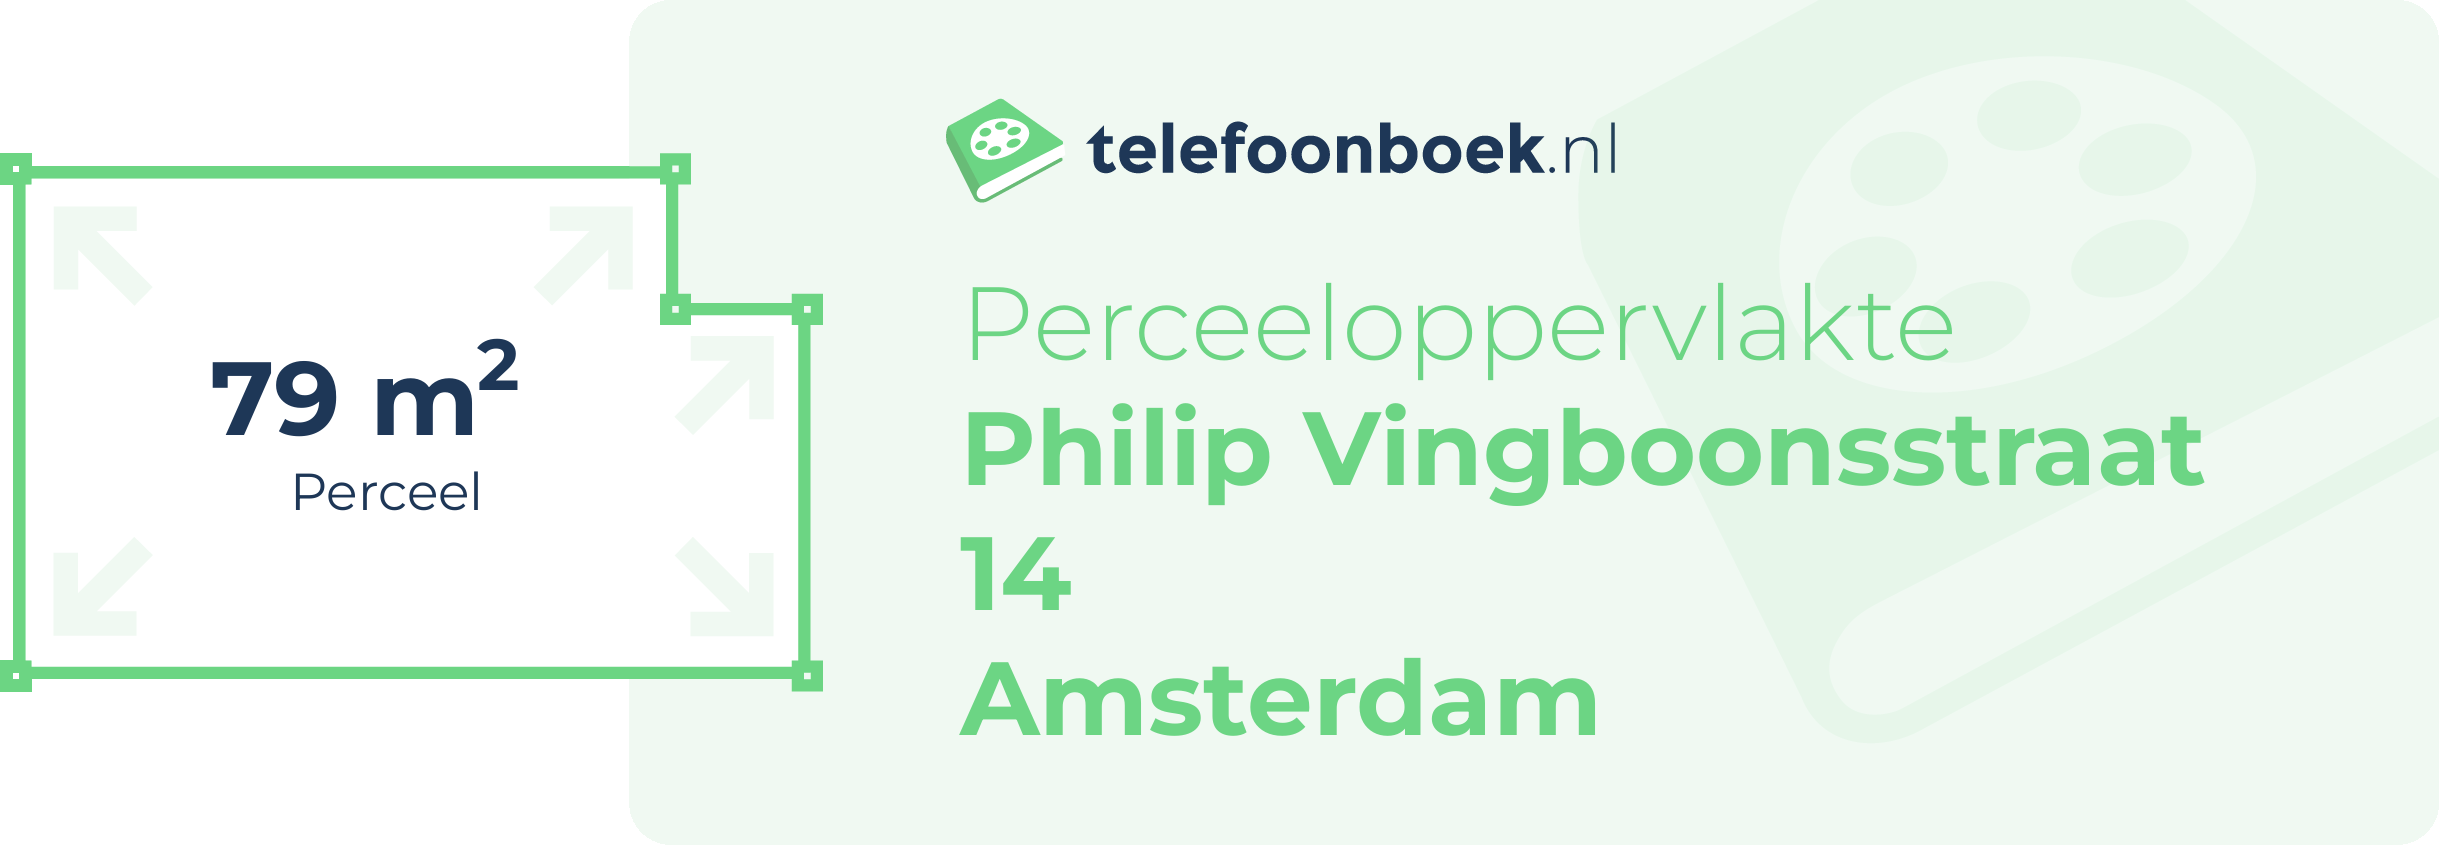 Perceeloppervlakte Philip Vingboonsstraat 14 Amsterdam